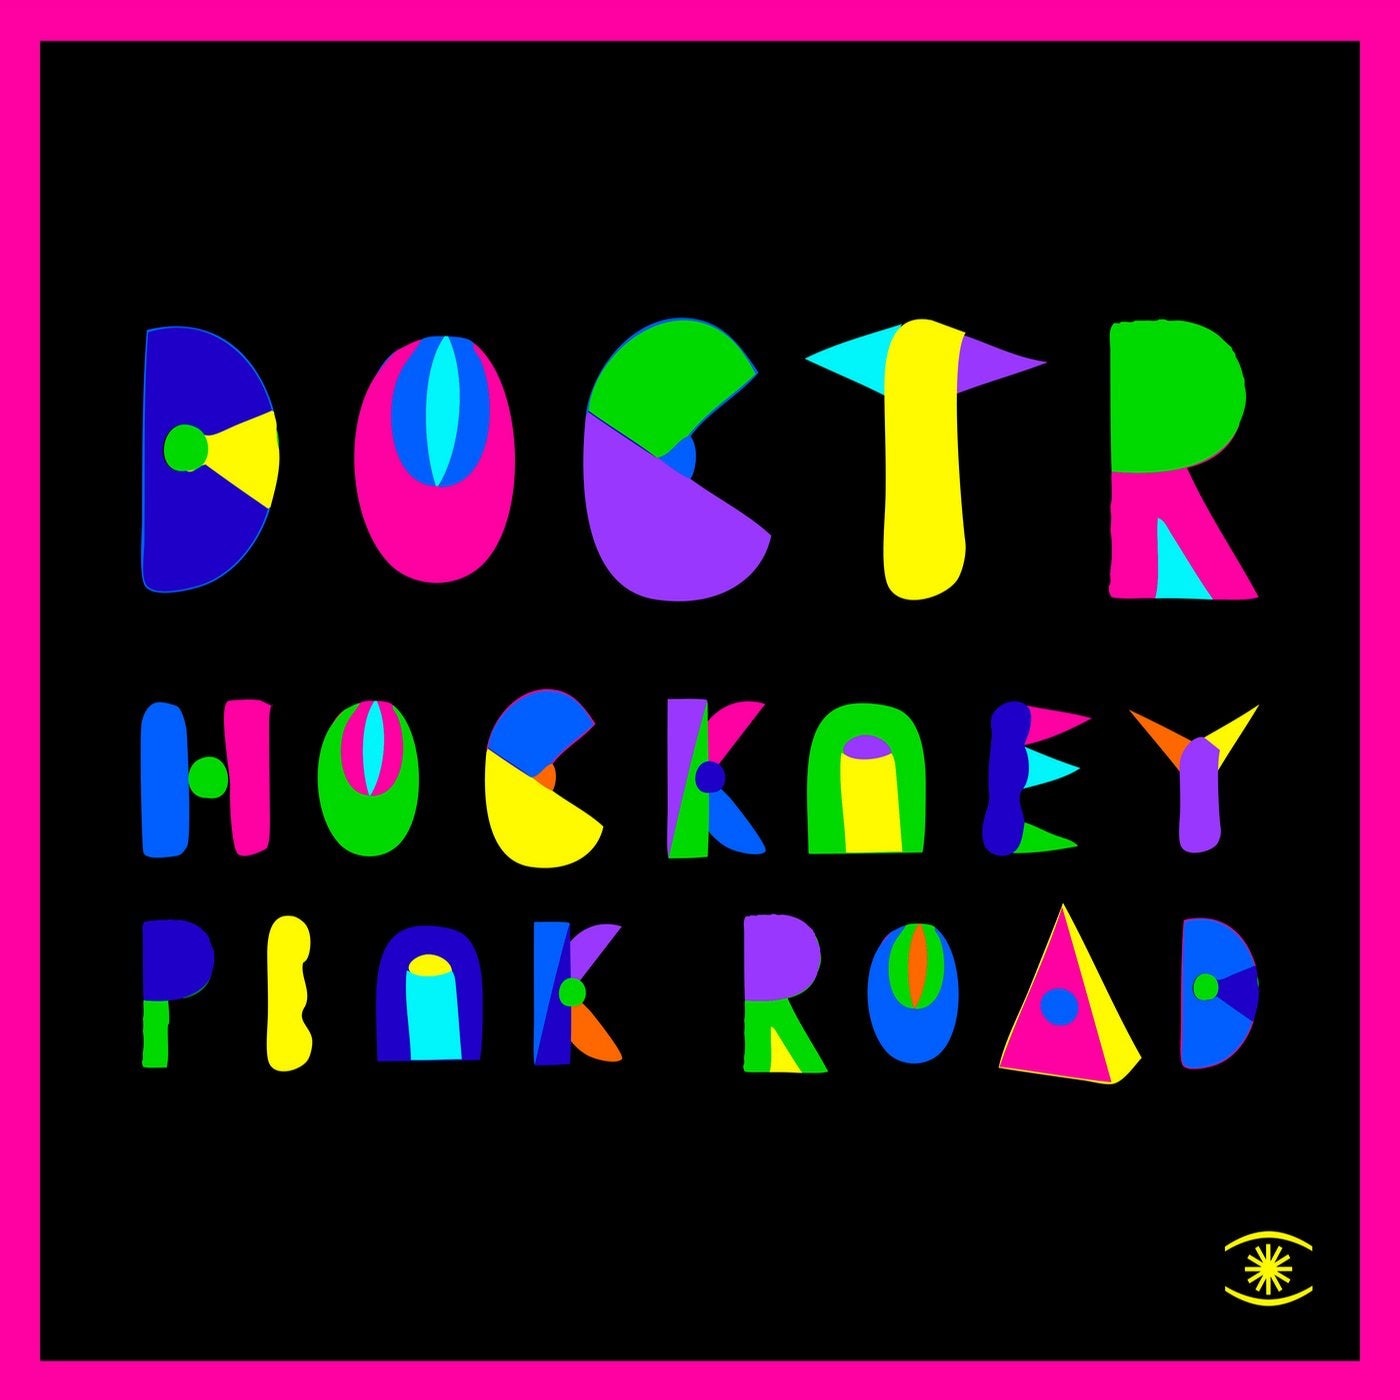 Hockney Pink Road